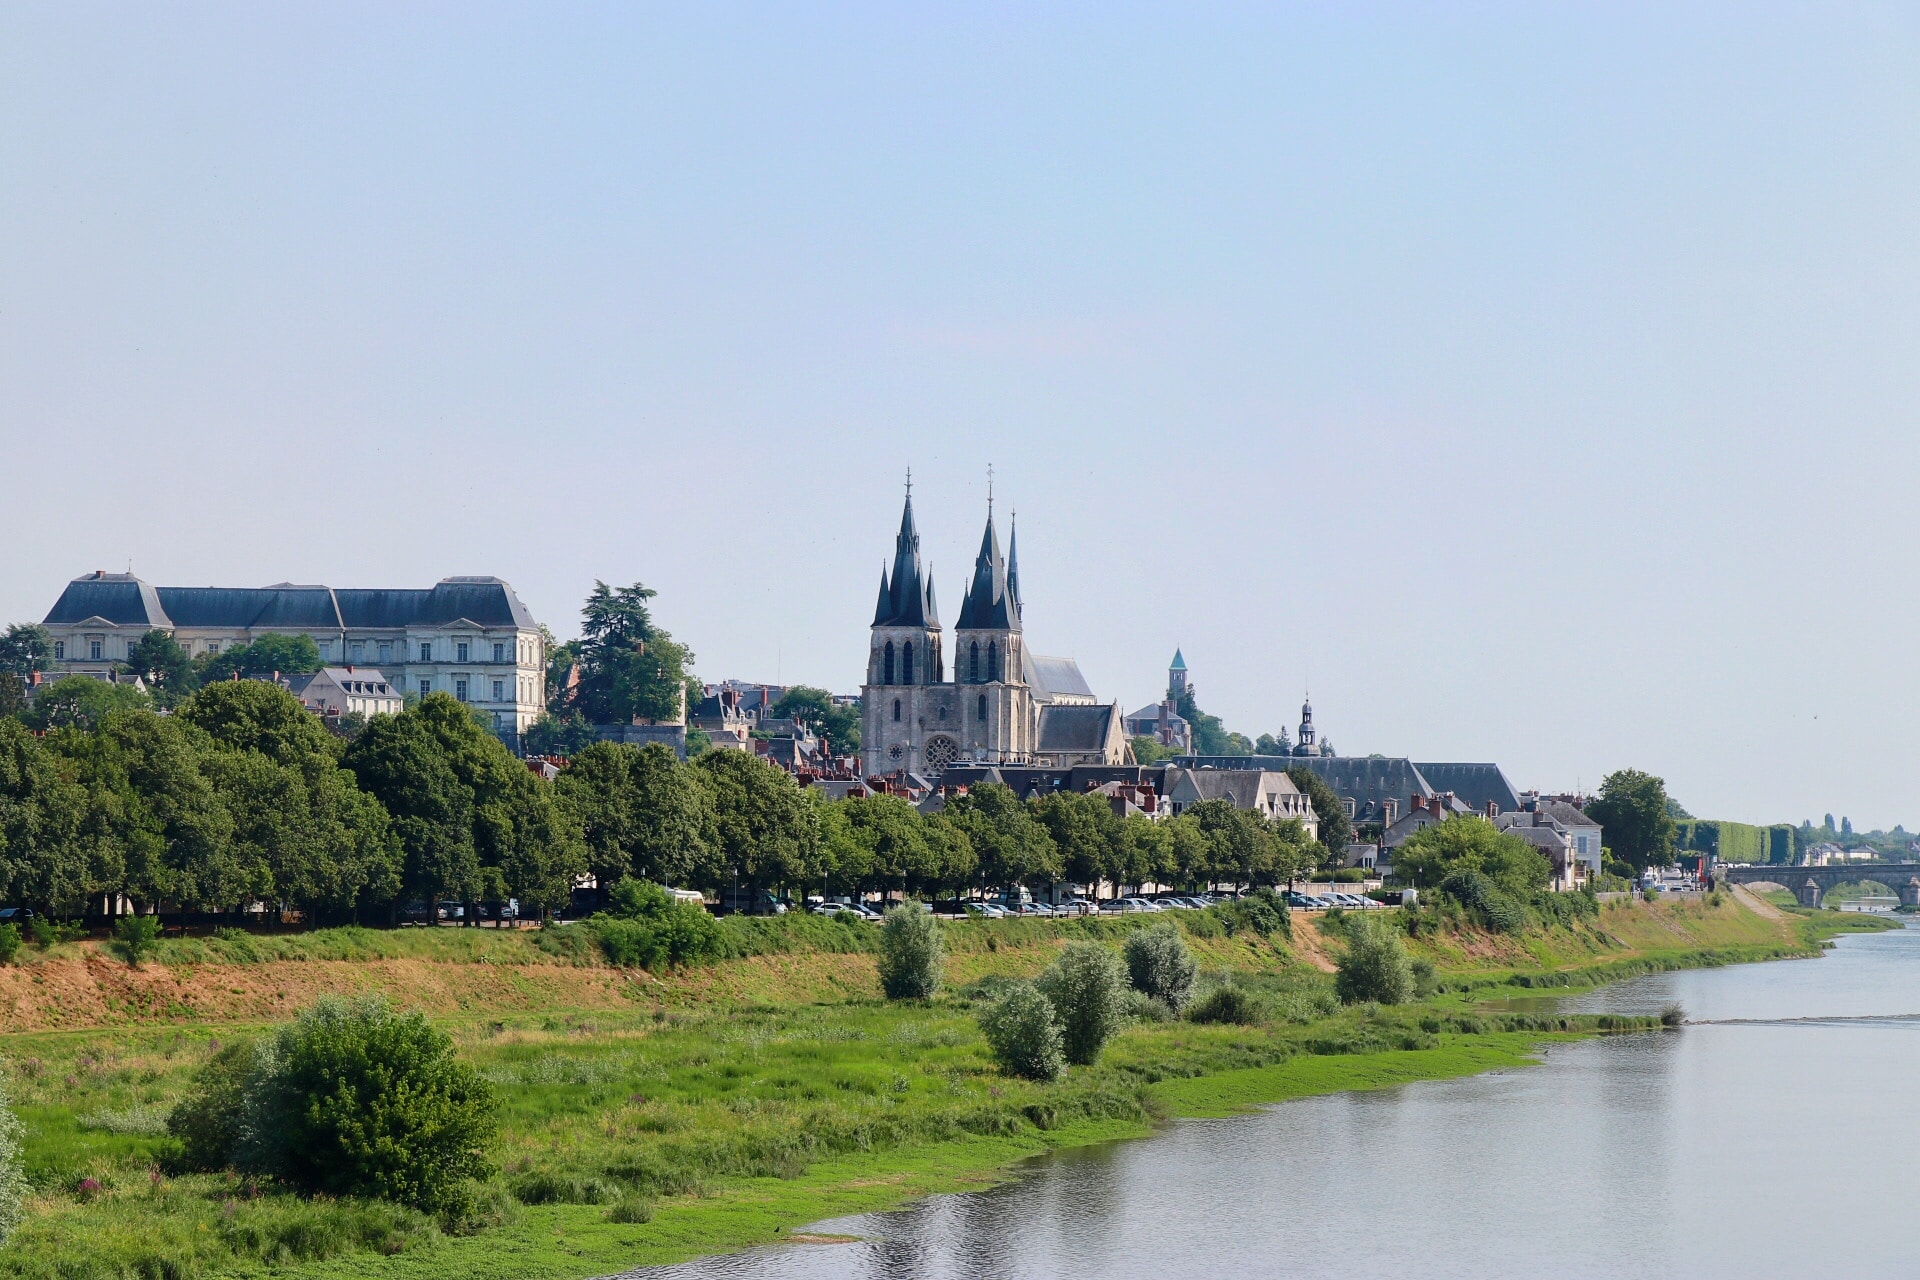 Scenic Chateaux Loire Valley road trip: Château de Blois